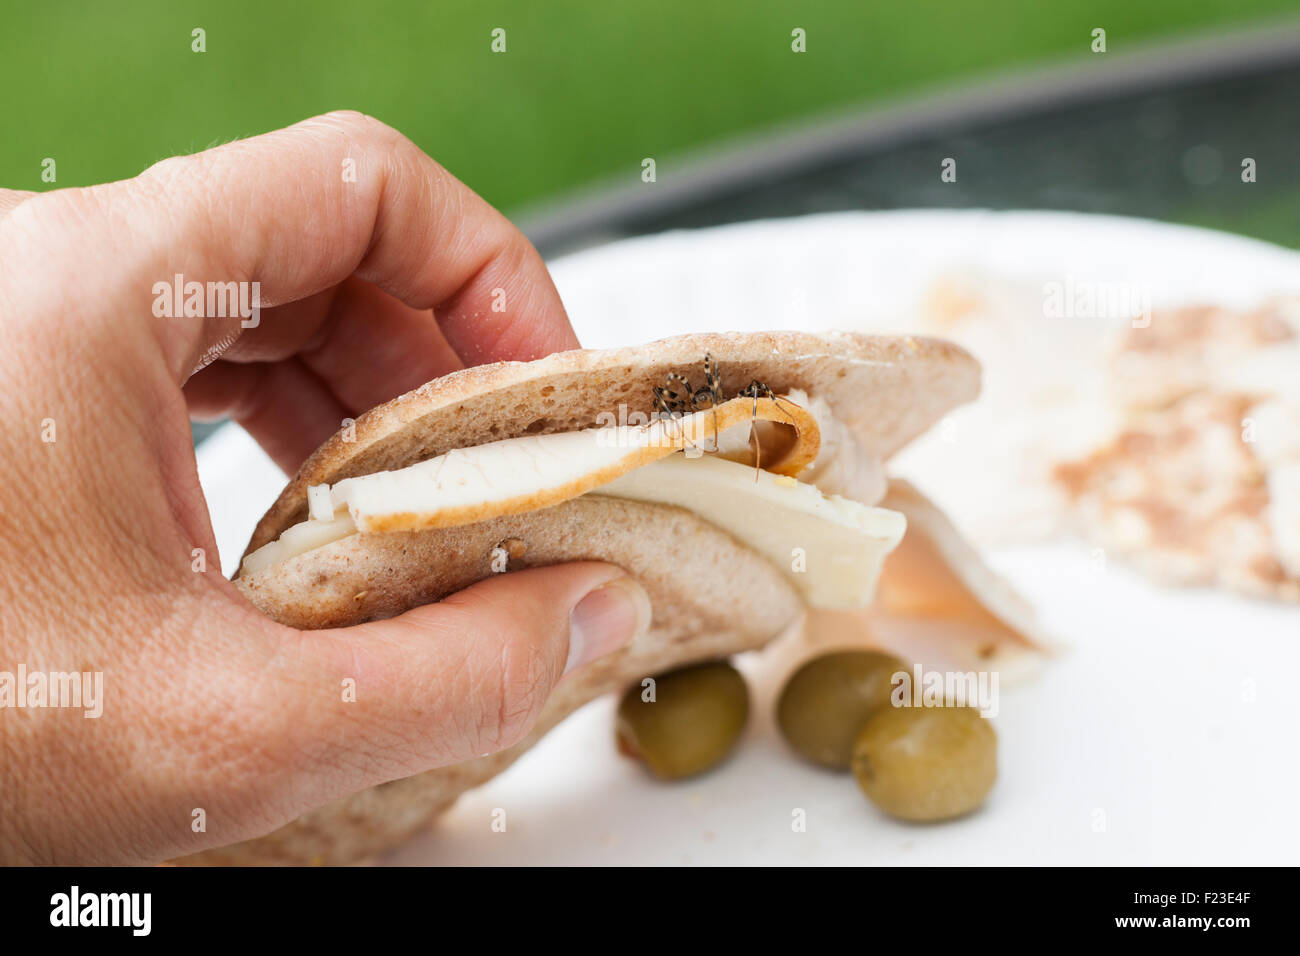 Sándwich de pavo con una casa de ciempiés que sobresalen del pan Foto de stock